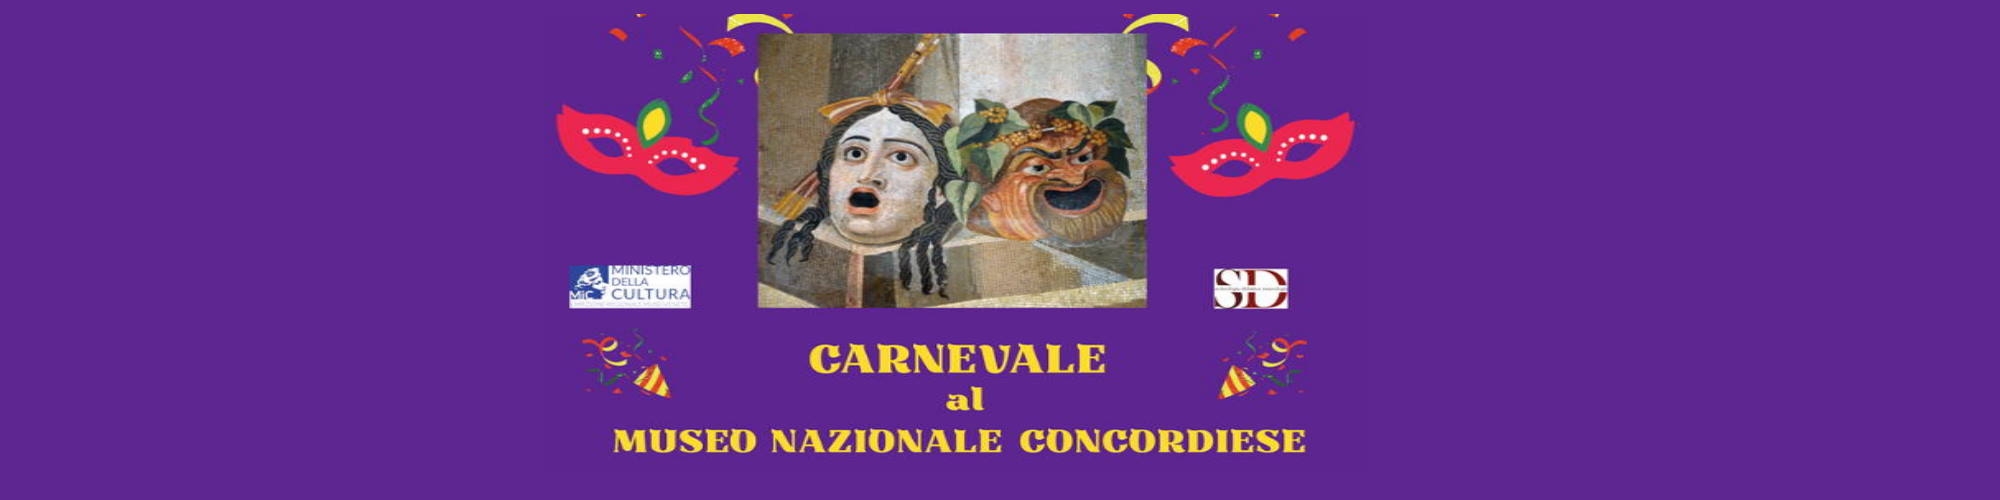 Immagine Carnevale al Museo Nazionale Concordiese